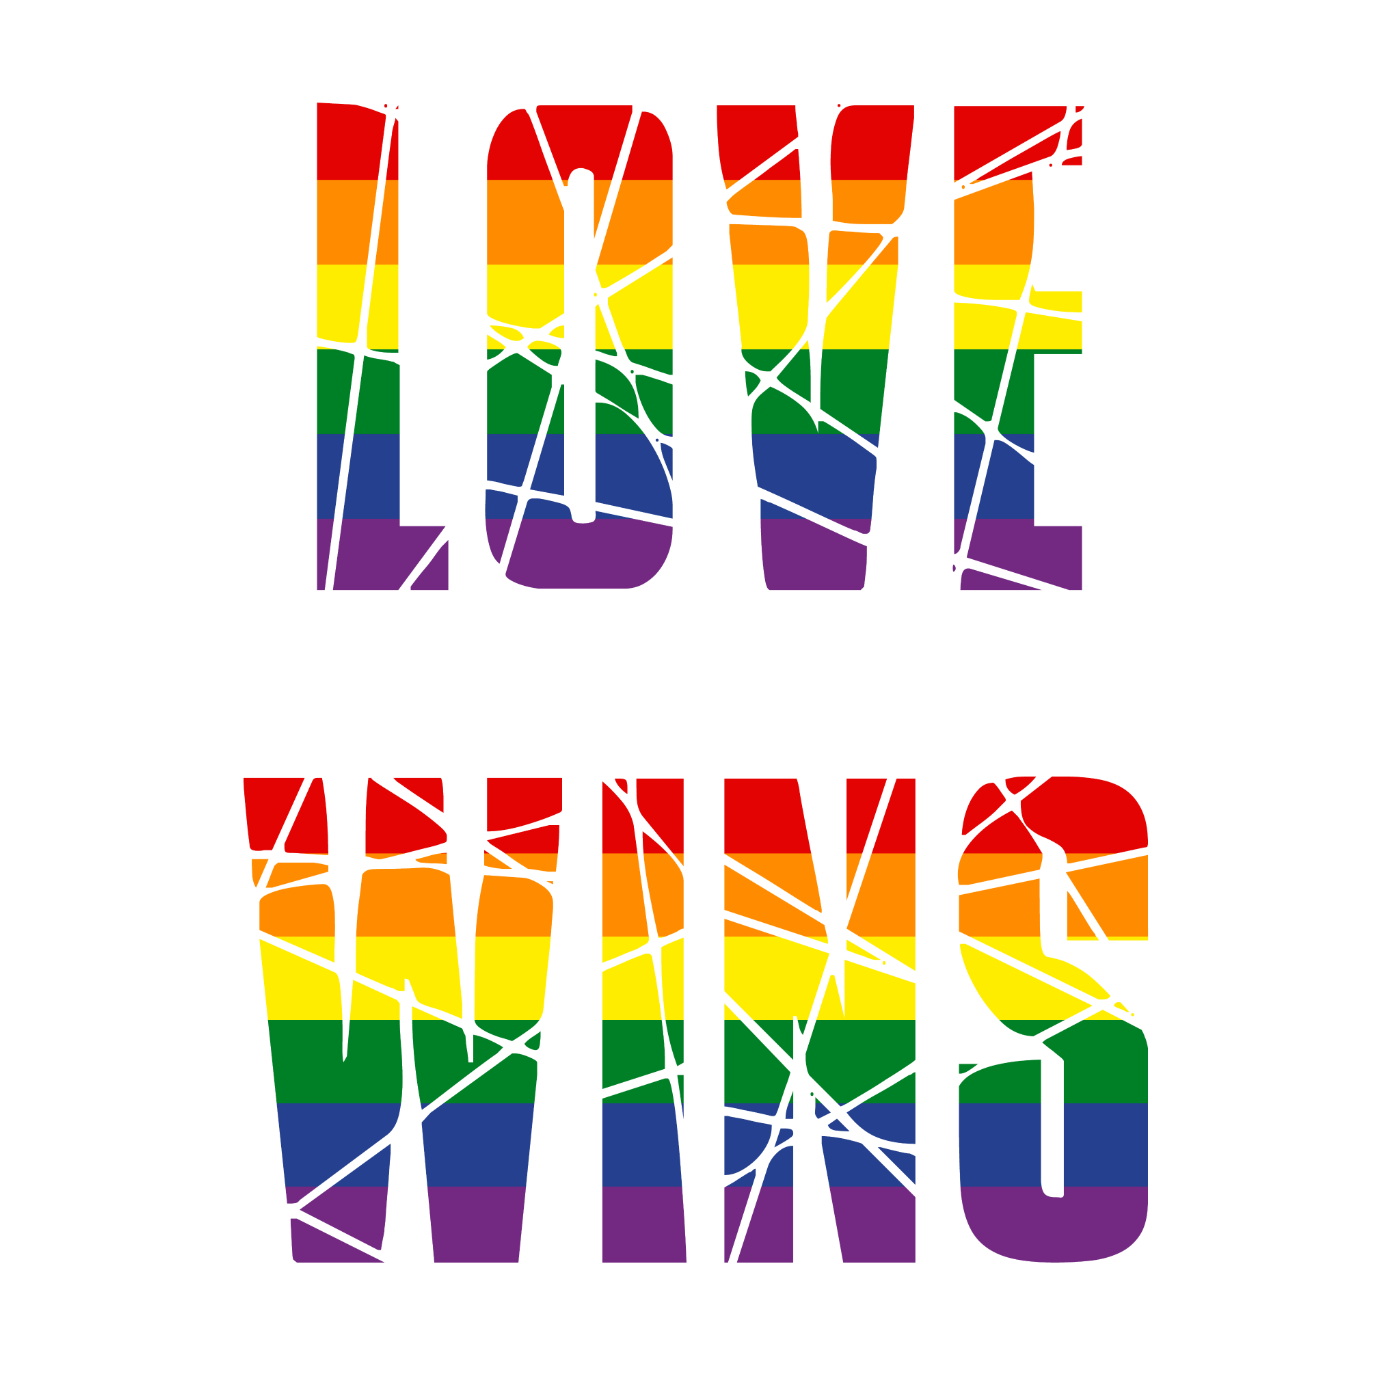 LOVE WINS in Regenbogen-Farben